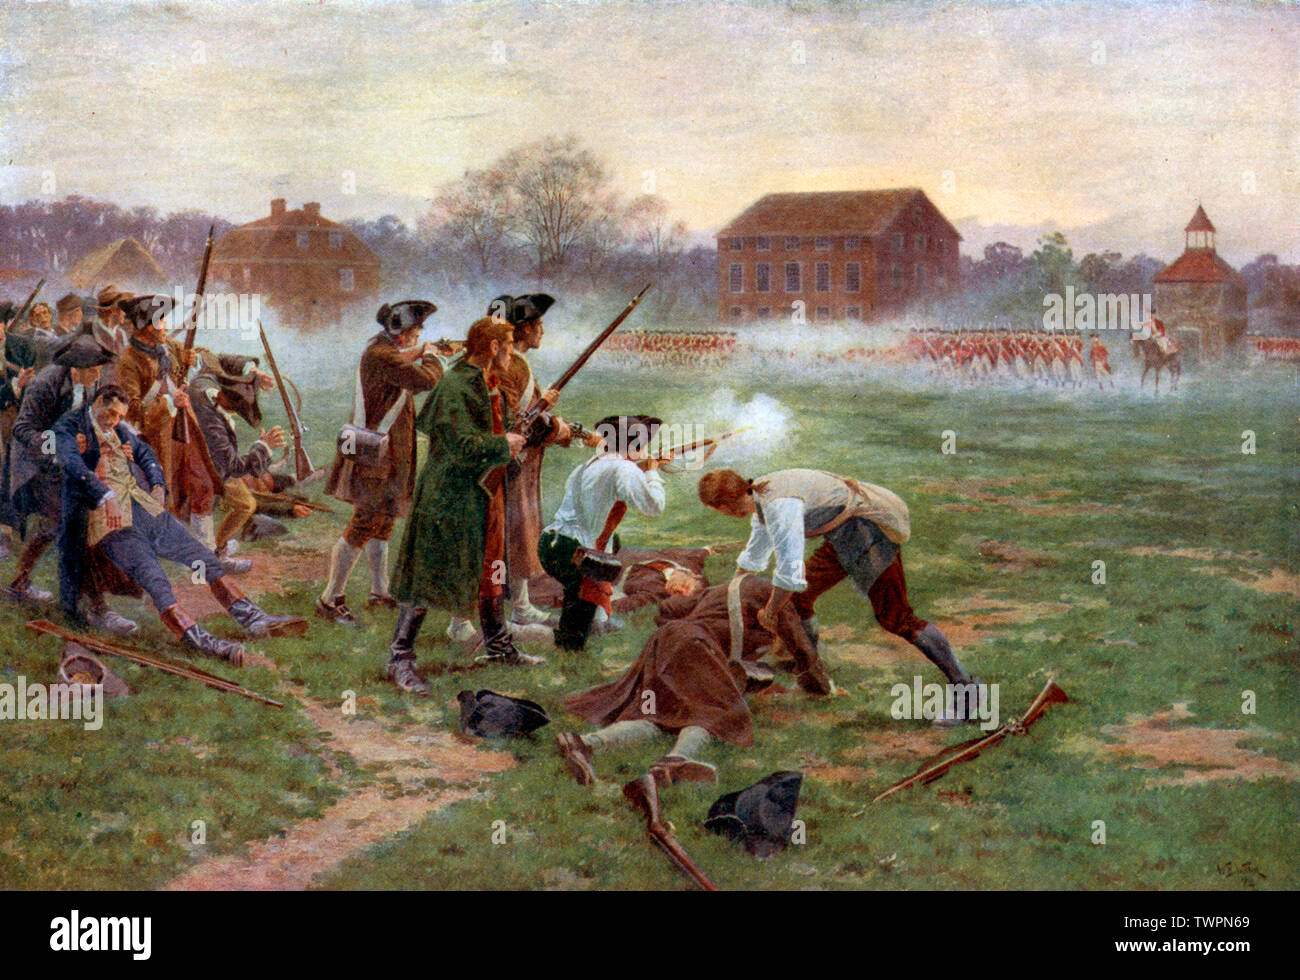 "The First Fight for Independence, Lexington Common, 19th aprile 1775" (1910). Di William Barnes Wollen (1857-1936). Le battaglie di Lexington e Concord furono i primi impegni militari della Guerra rivoluzionaria americana. Foto Stock